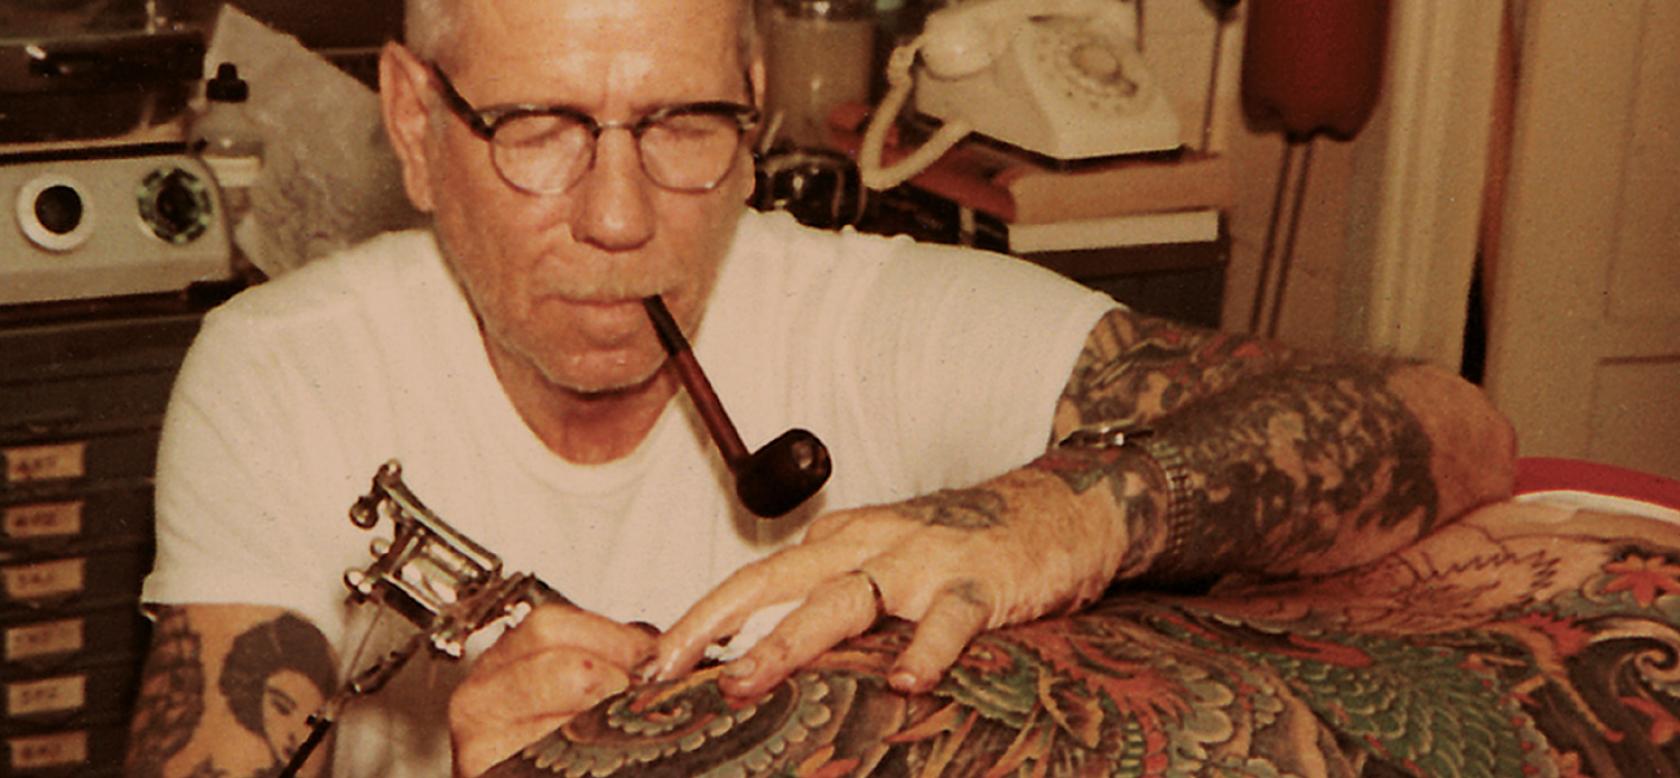 татуировки моряков морские татуировки значение отвратительные мужики disgusting men